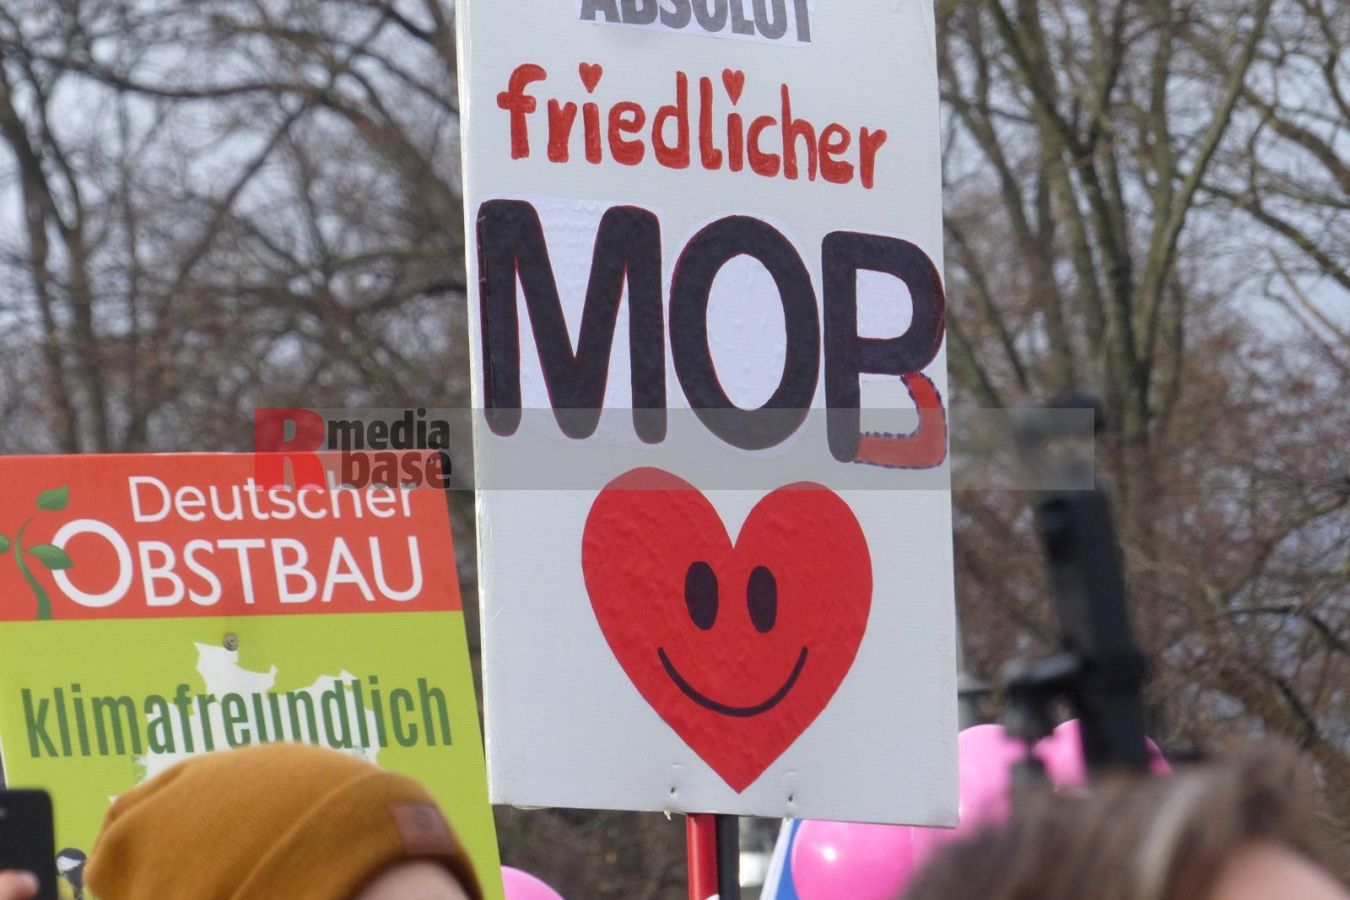 Bauernprotest in Berlin <i>Bild Denner/R-mediabase</i> <br><a href=/confor2/?bld=79033&pst=78995&aid=86&i1=Denner/R-mediabase>Download Bild 79033</a>  <br><a href=/?p=78995>Zum Beitrag 78995</a>